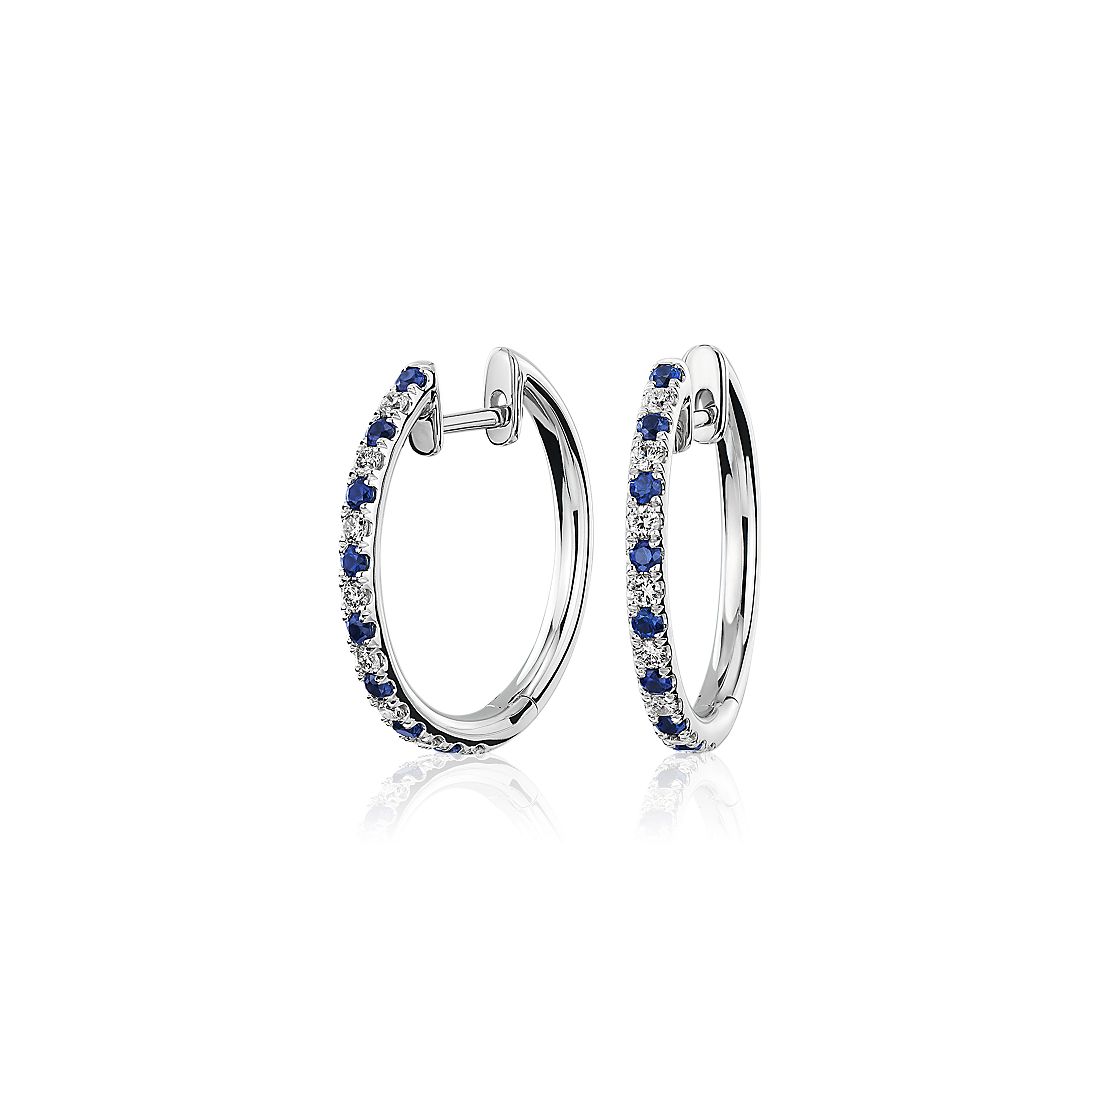 Alternating Sapphire and Diamond Hoop Earrings in 14k White Gold